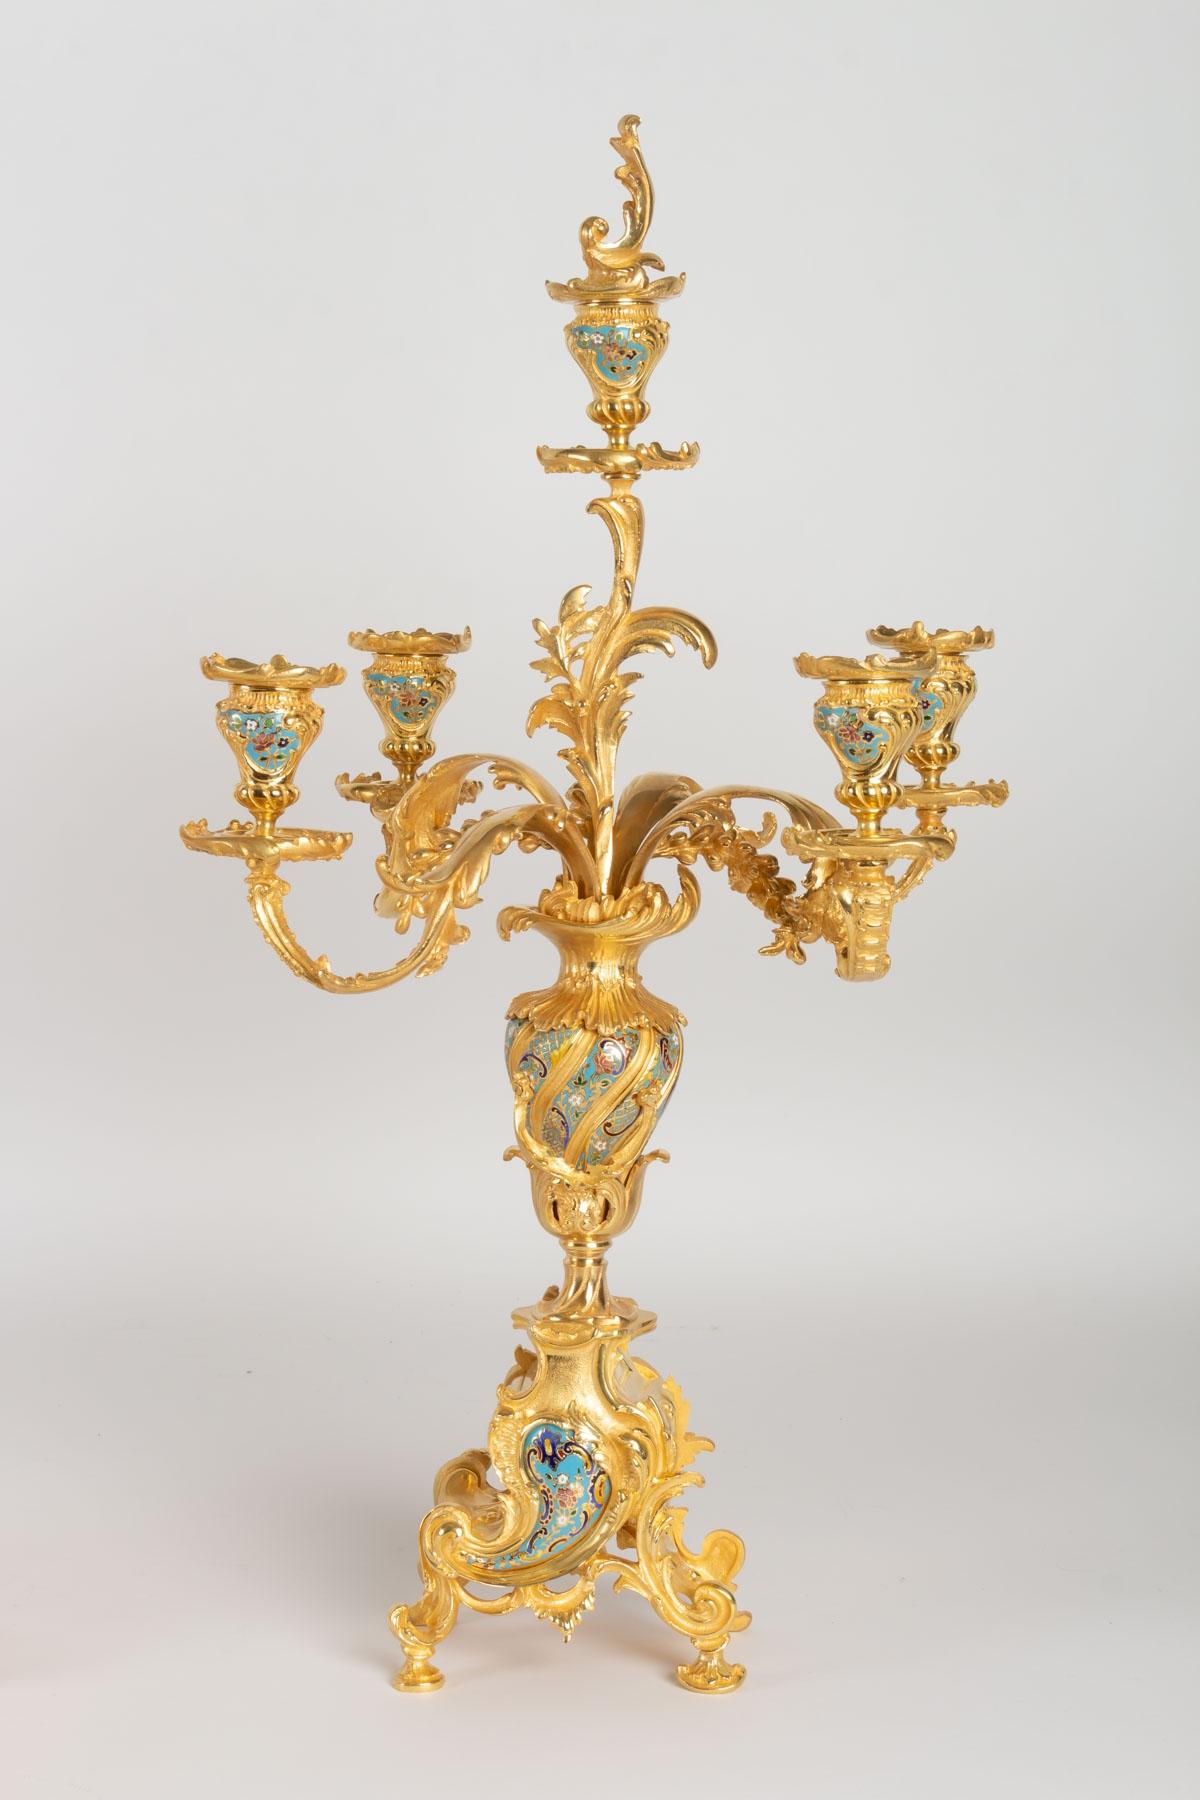 Napoleon III Gold Bronze and Enamel Fireplace Clock